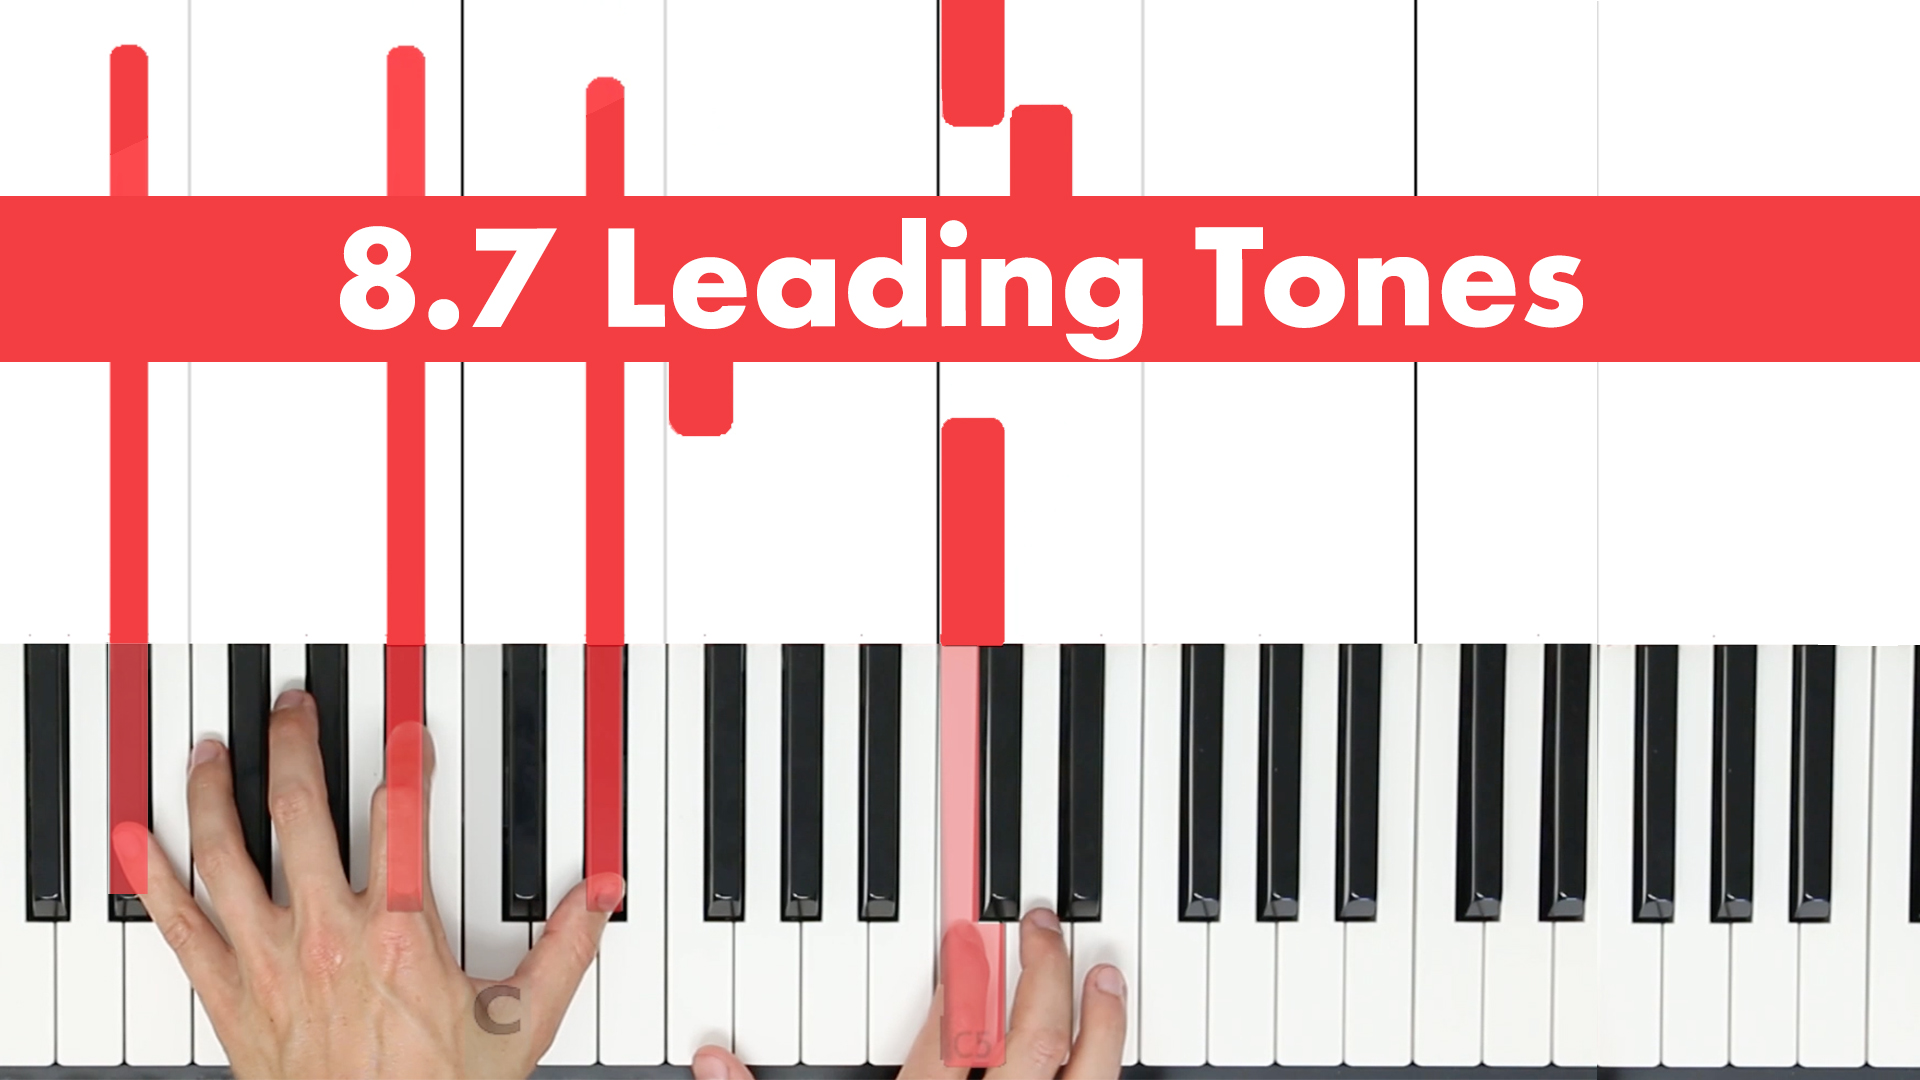 8.7 Leading Tones